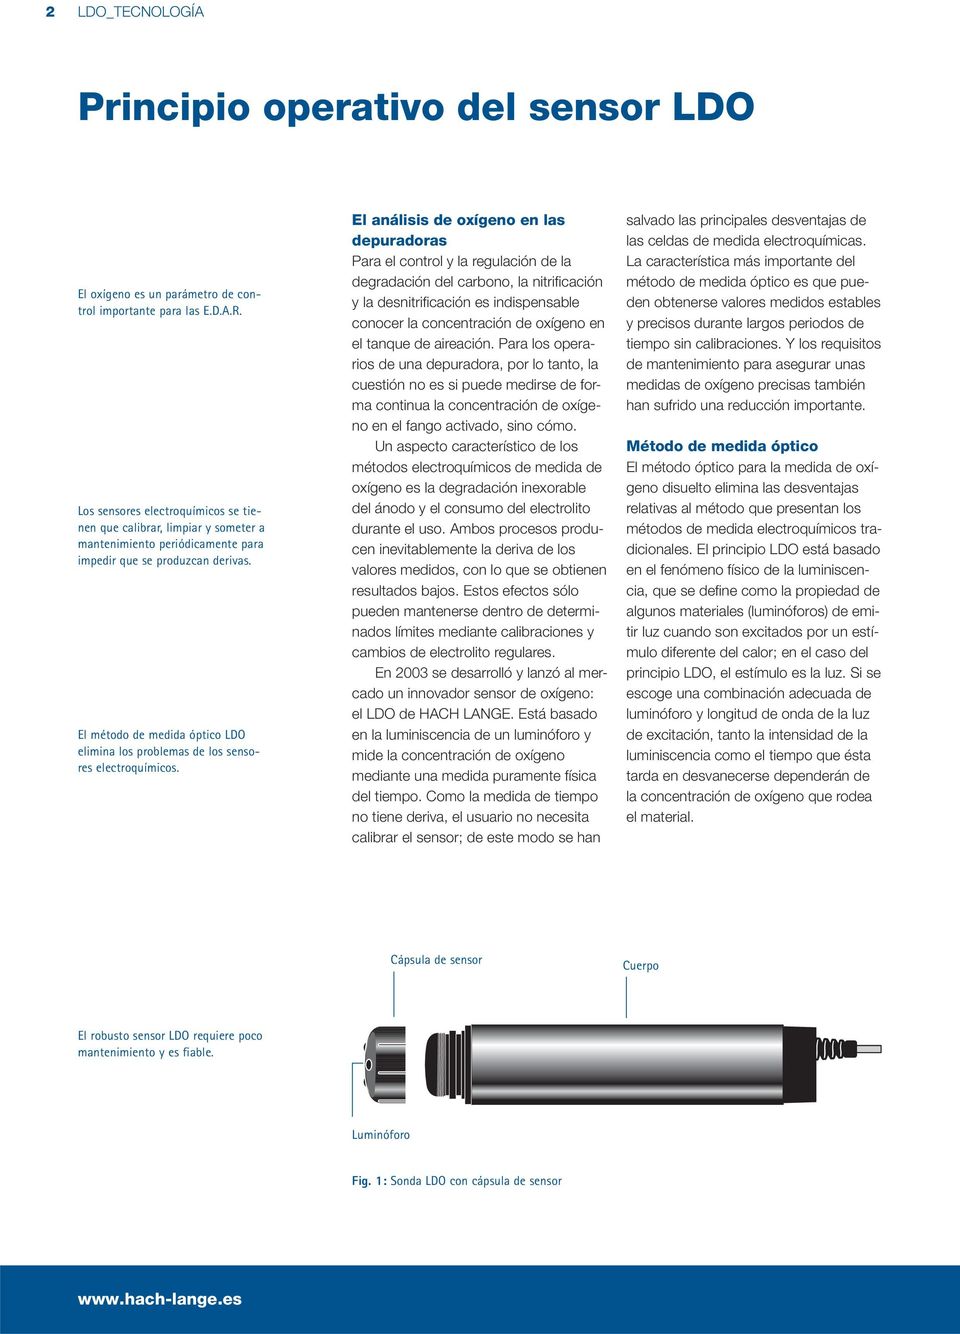 El método de medida óptico LDO elimina los problemas de los sensores electroquímicos.